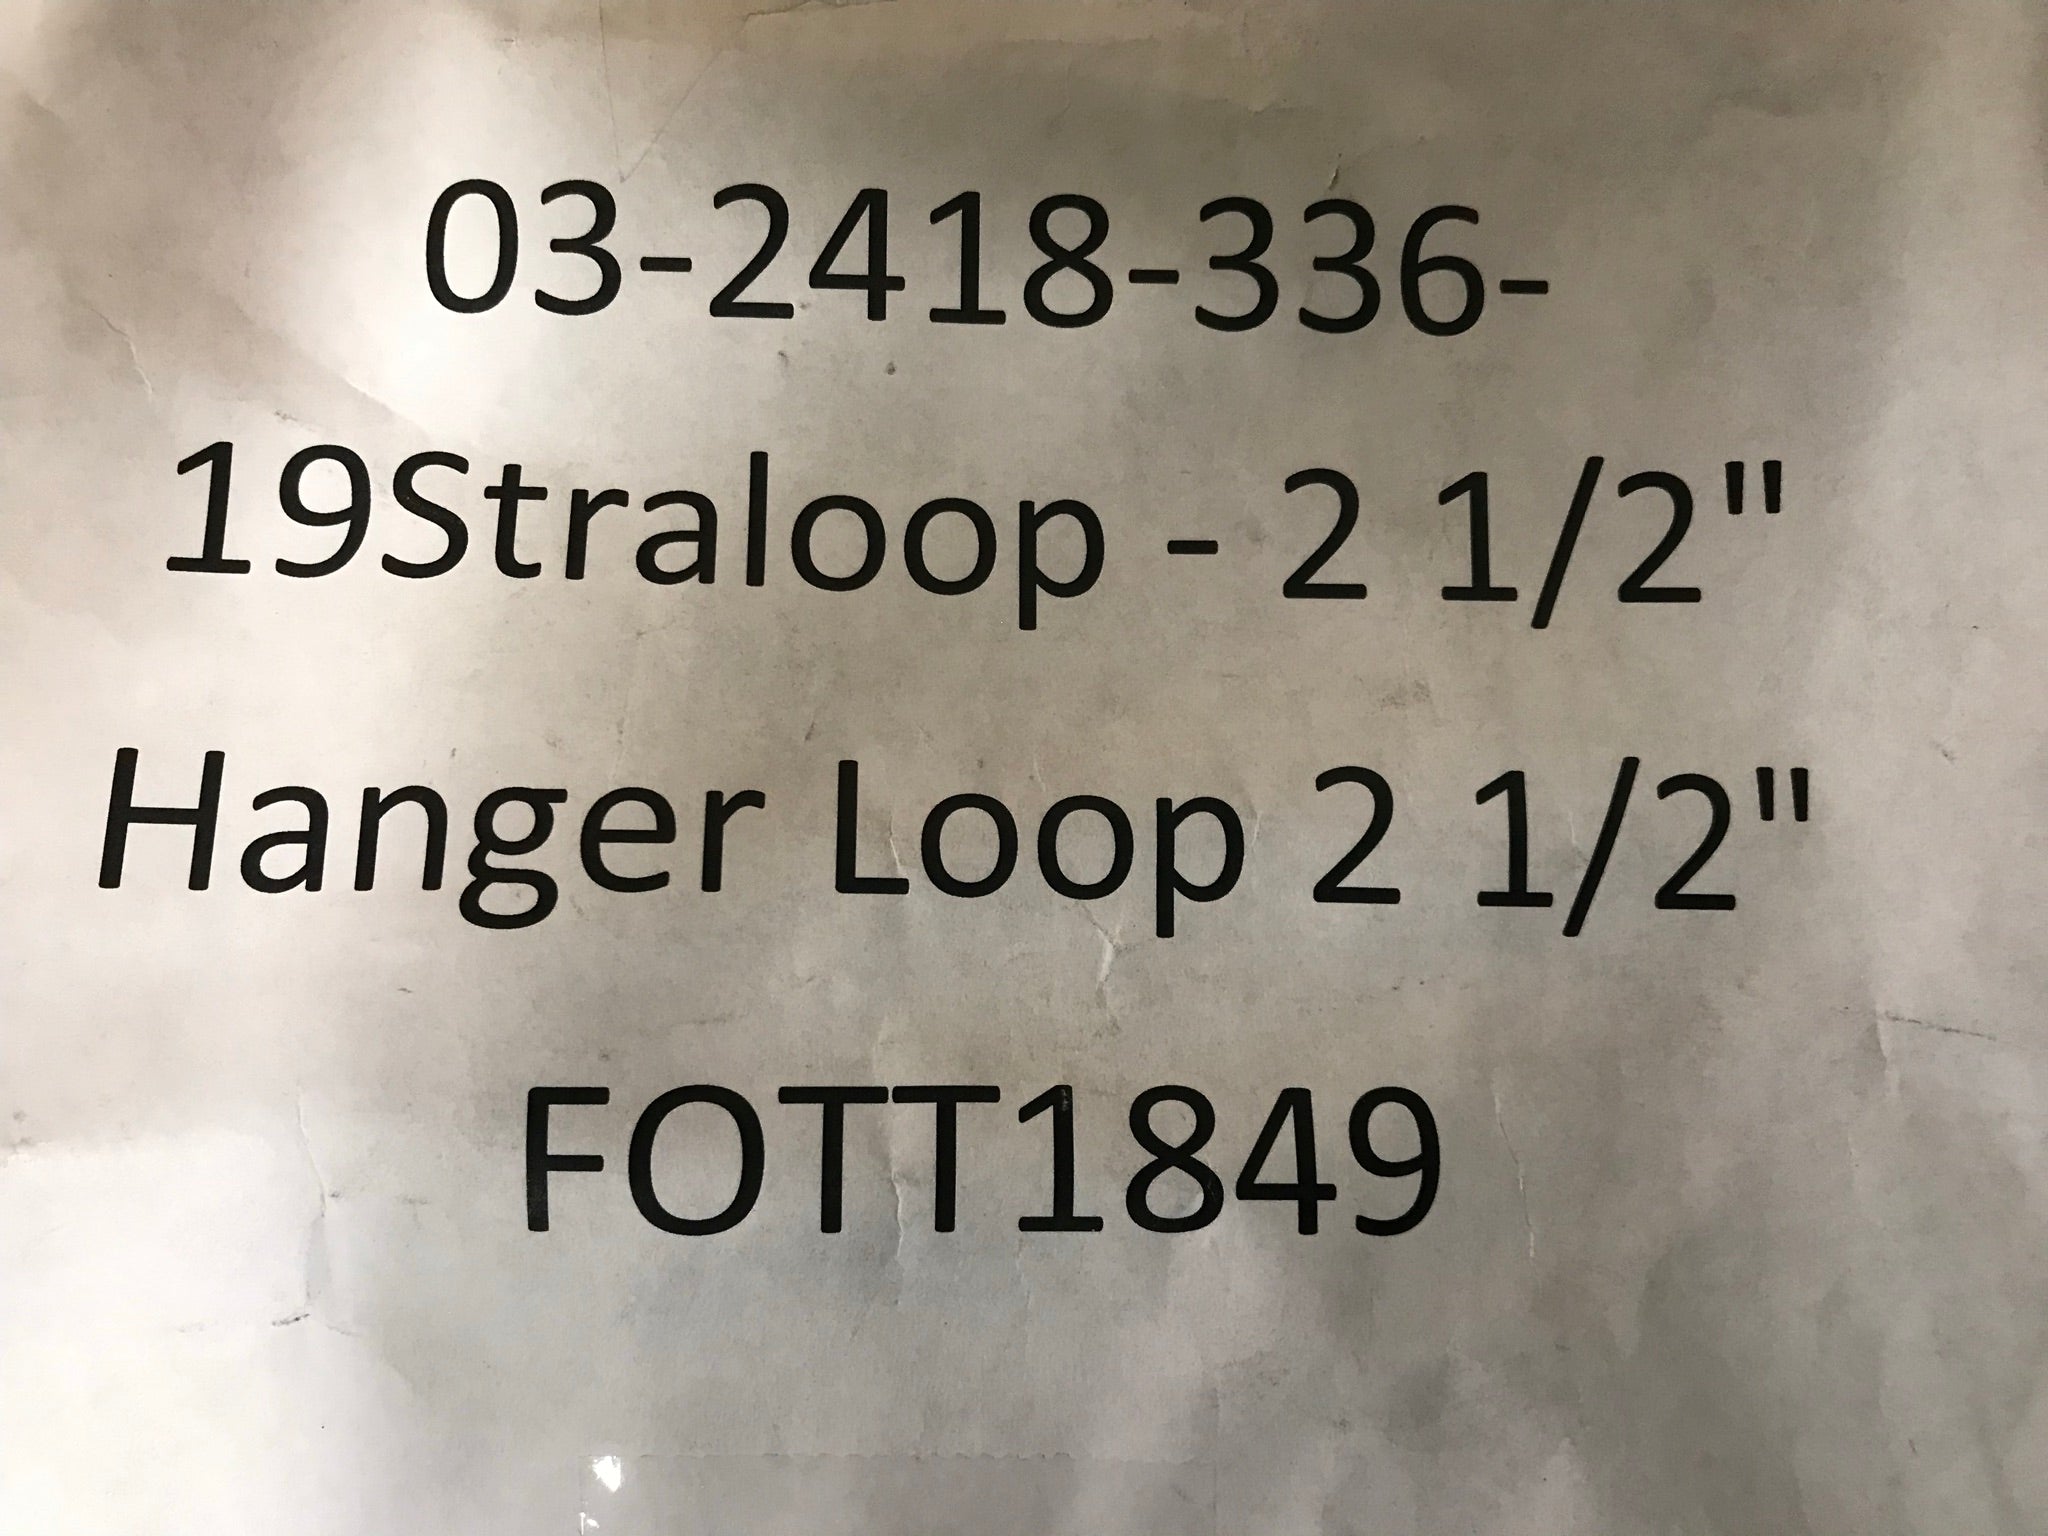 Hanger Loop 2 1/2"